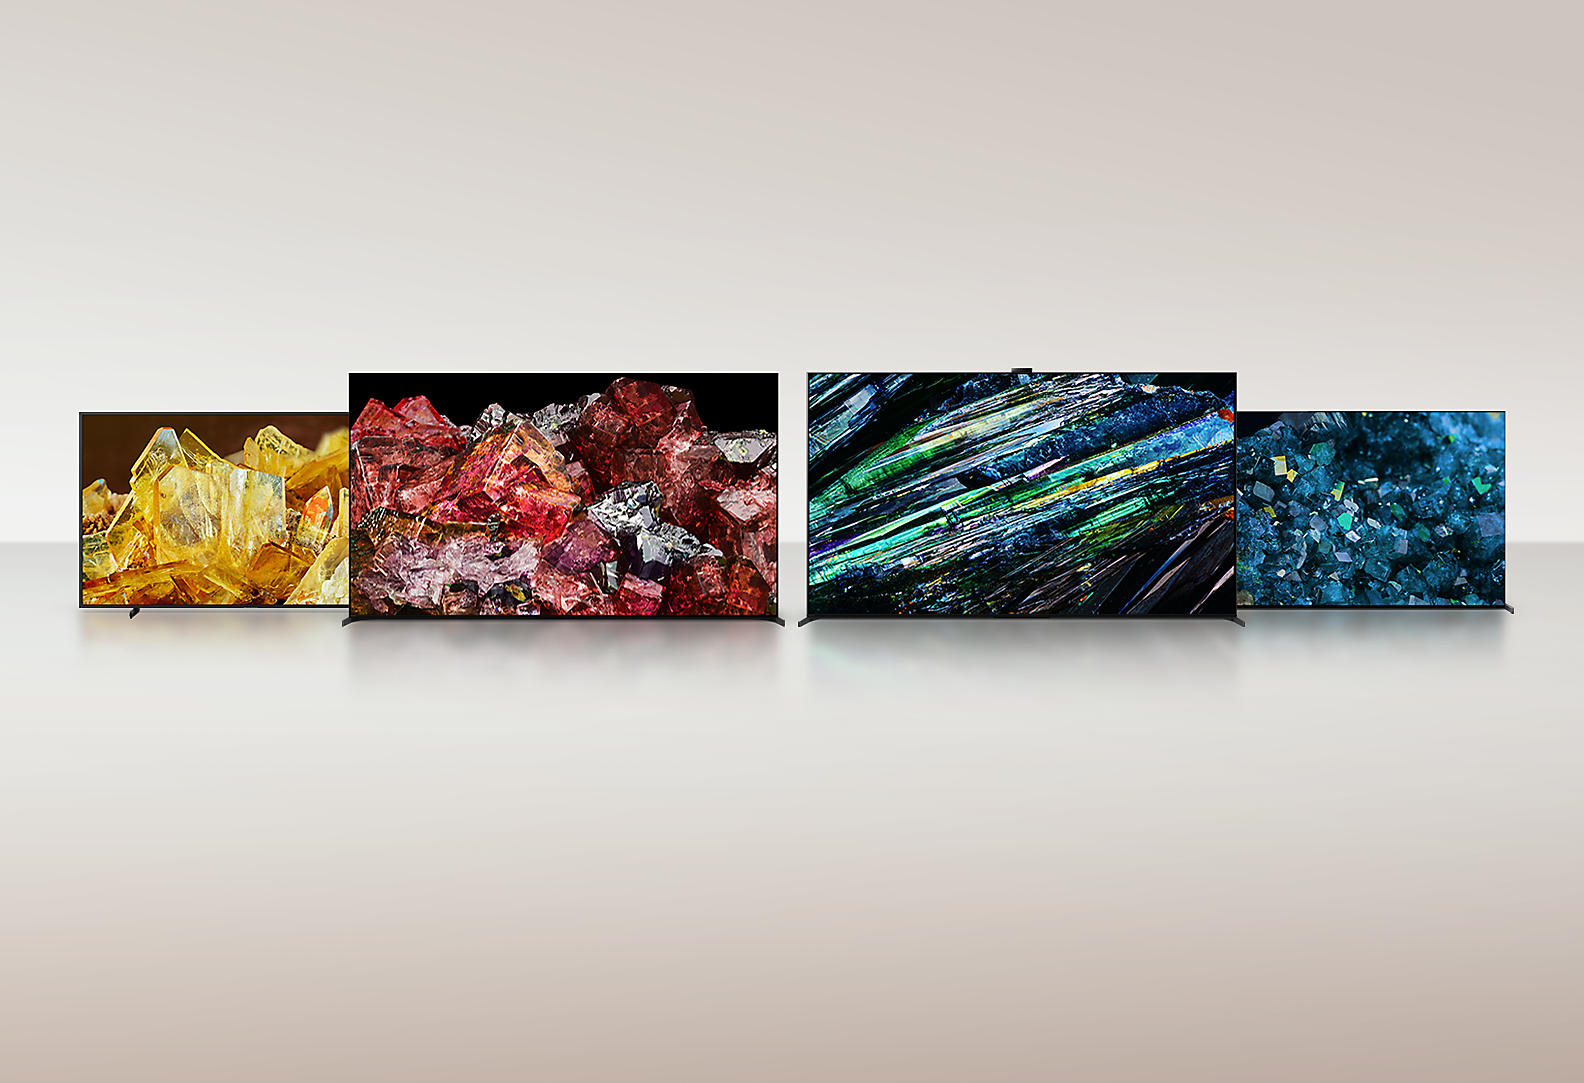 أربعة تلفزيونات BRAVIA XR تعرض صورًا بملء الشاشة لأنواع مختلفة من البلورات بتفاصيل وألوان مذهلة